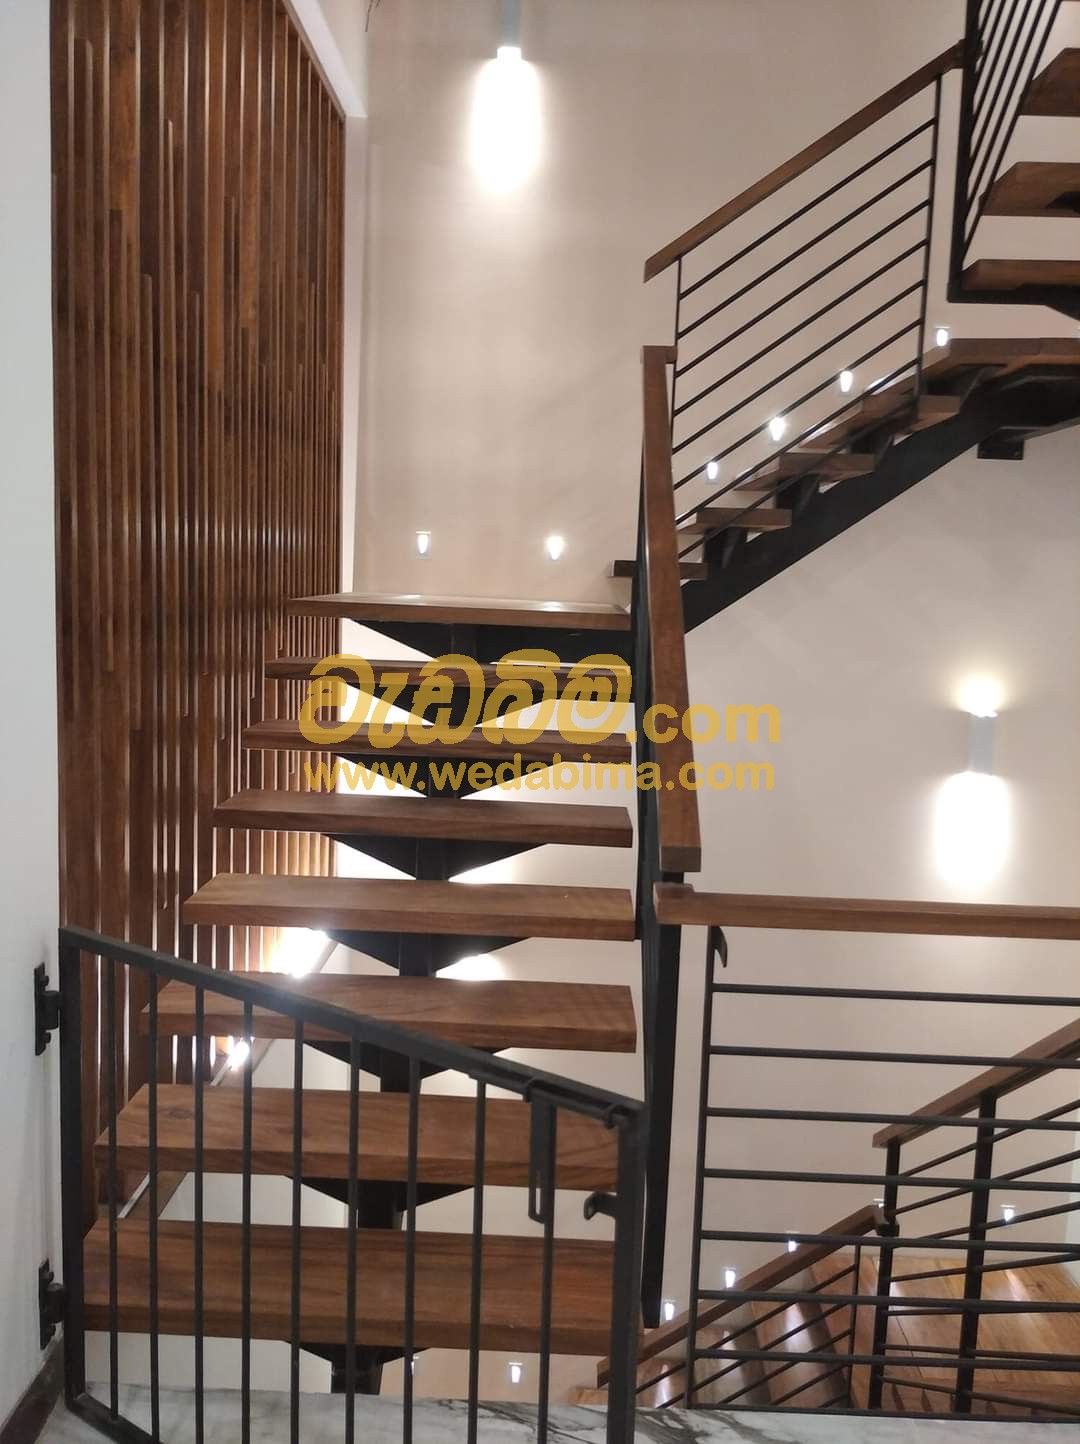 Cover image for Staircase Price in Sri Lanka